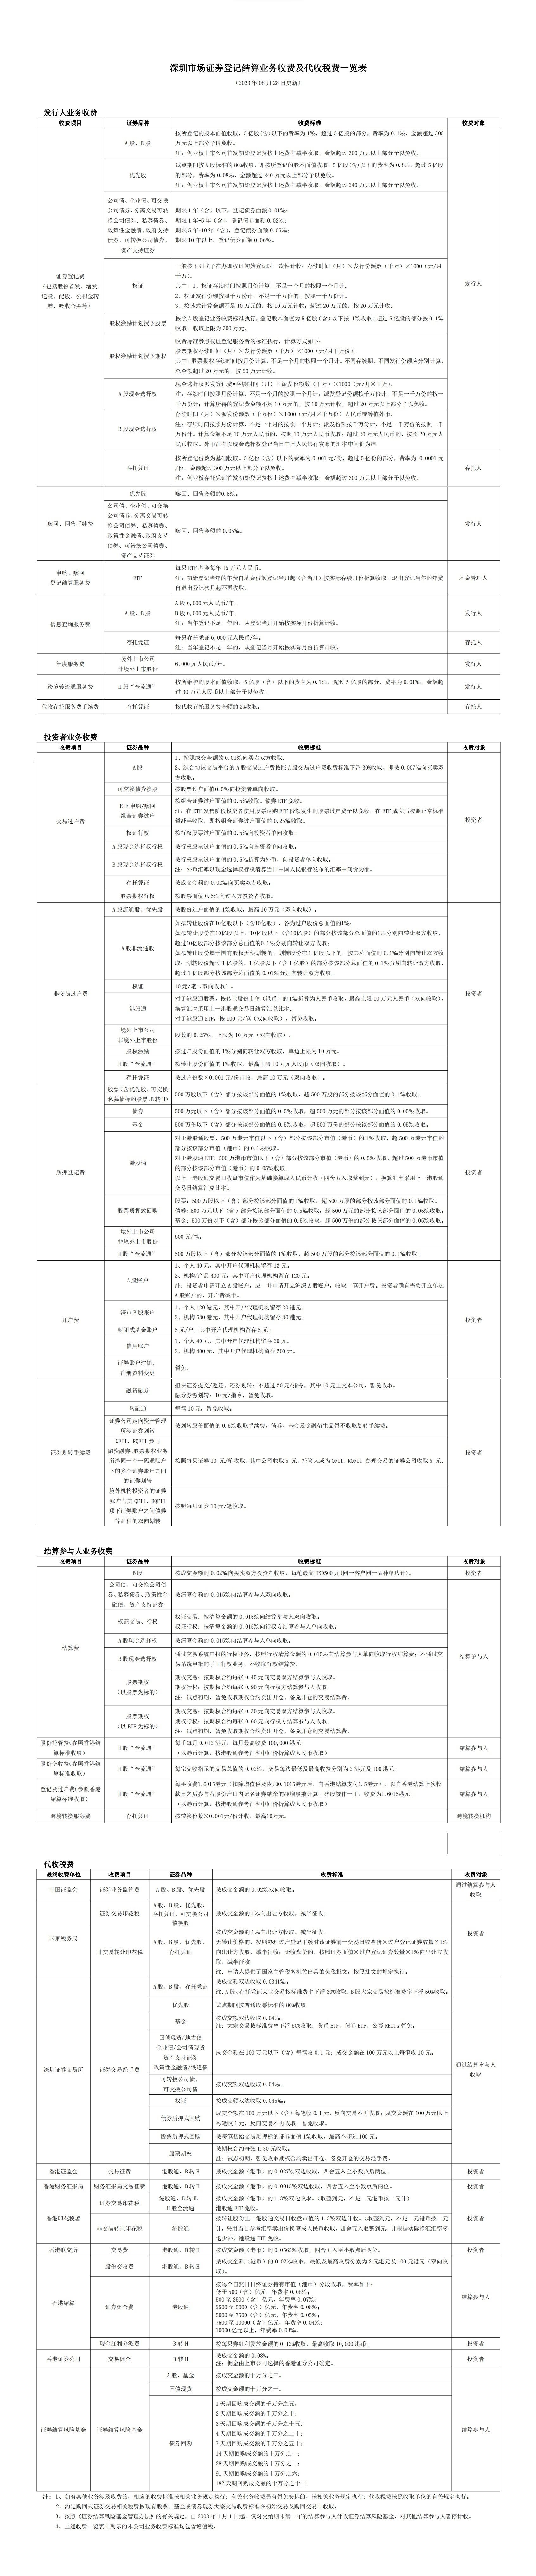 深圳市场证券登记结算业务收费及代收税费一览表.jpg